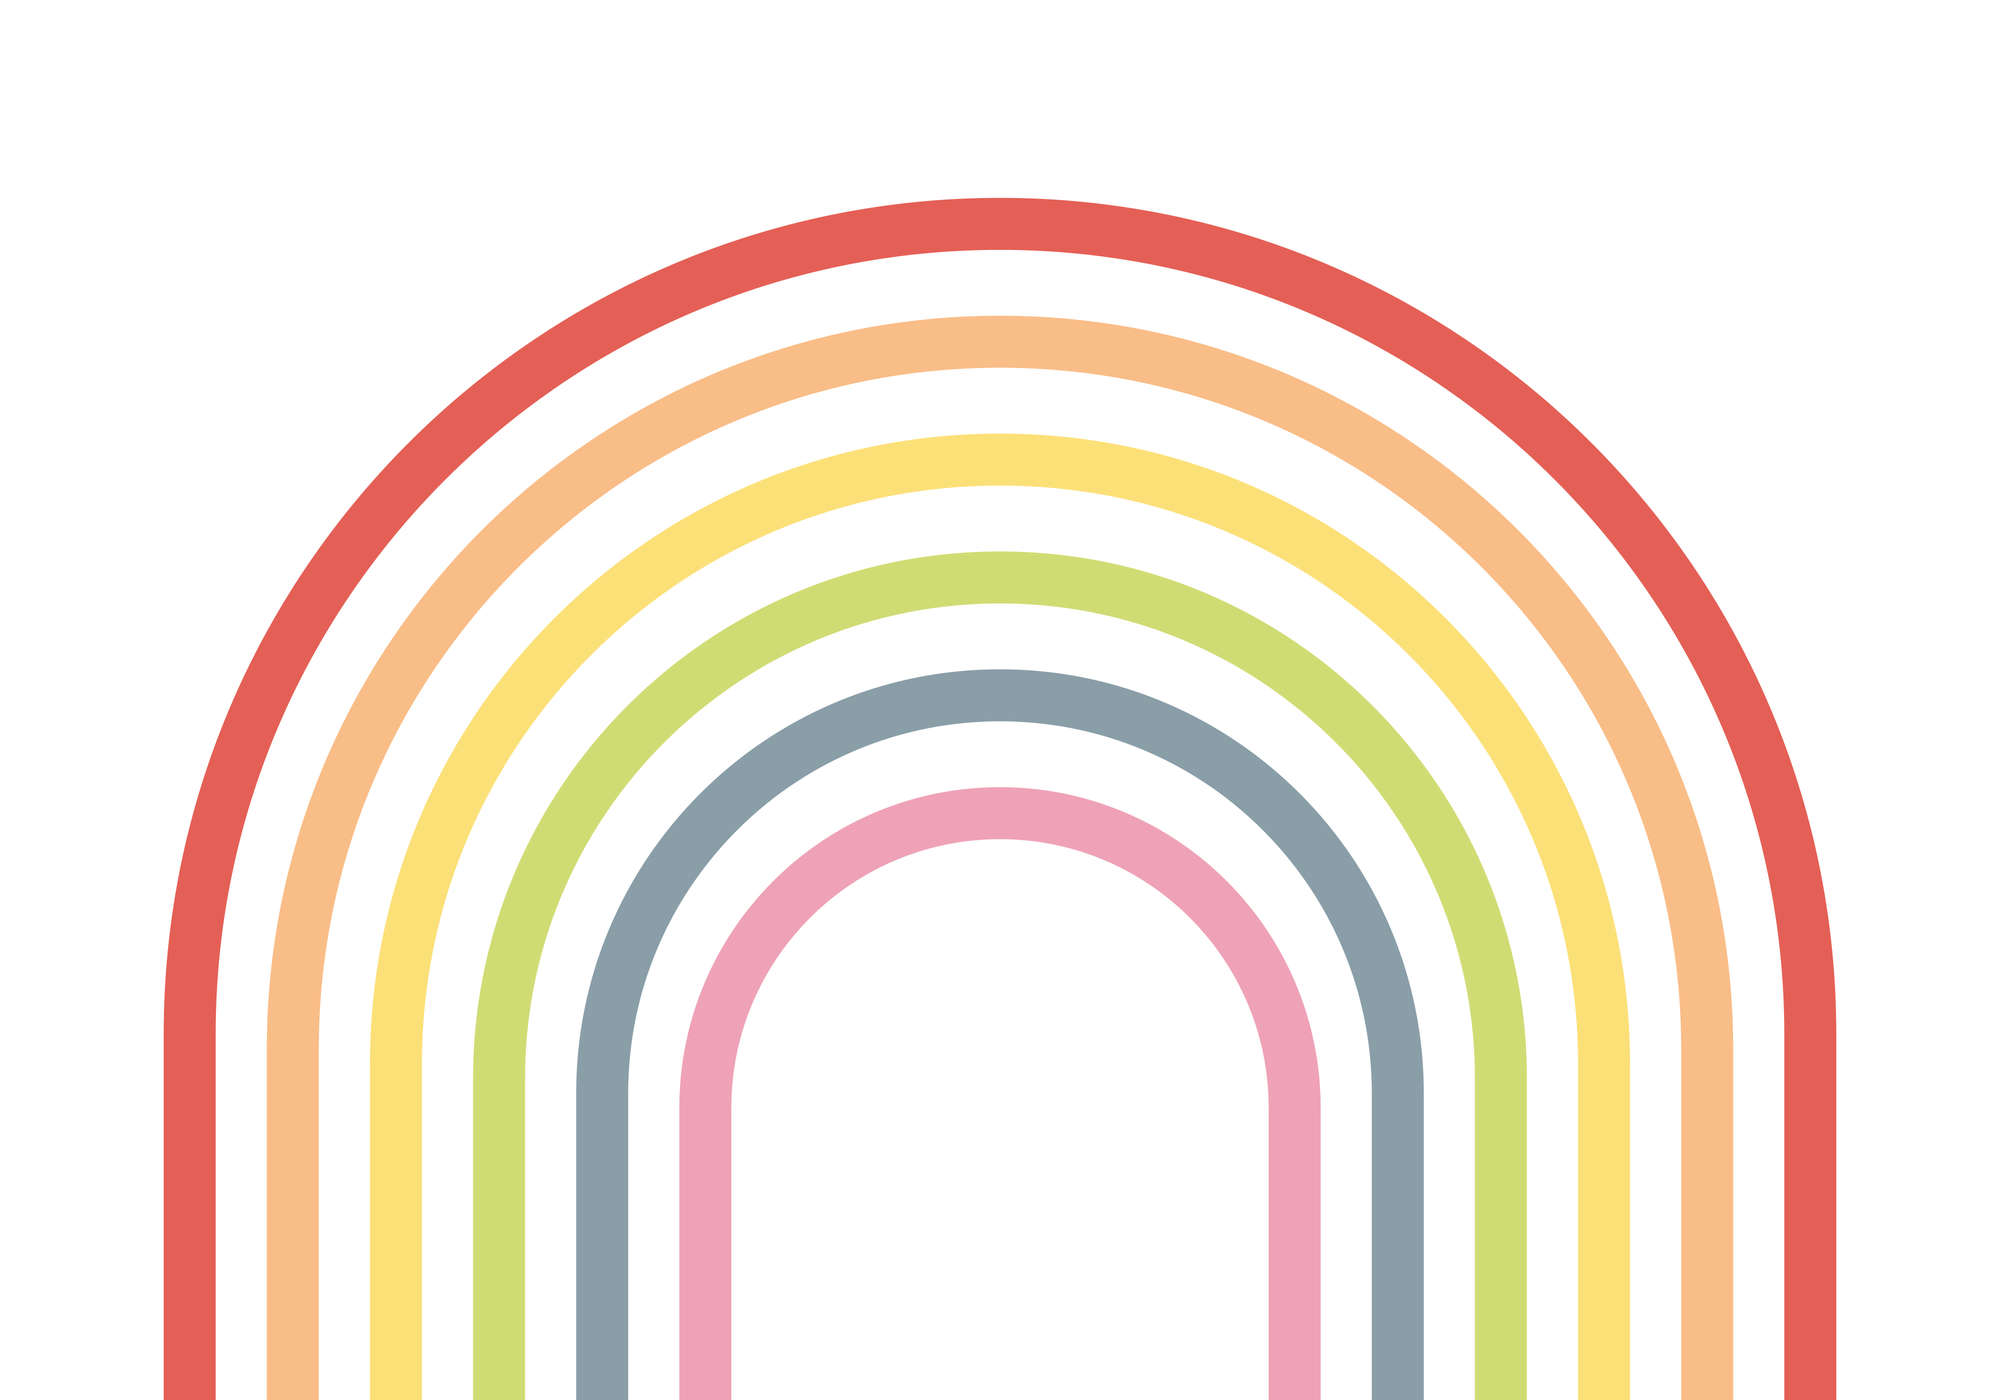             Fototapete Kinderzimmer Regenbogen in bunten Farben
        